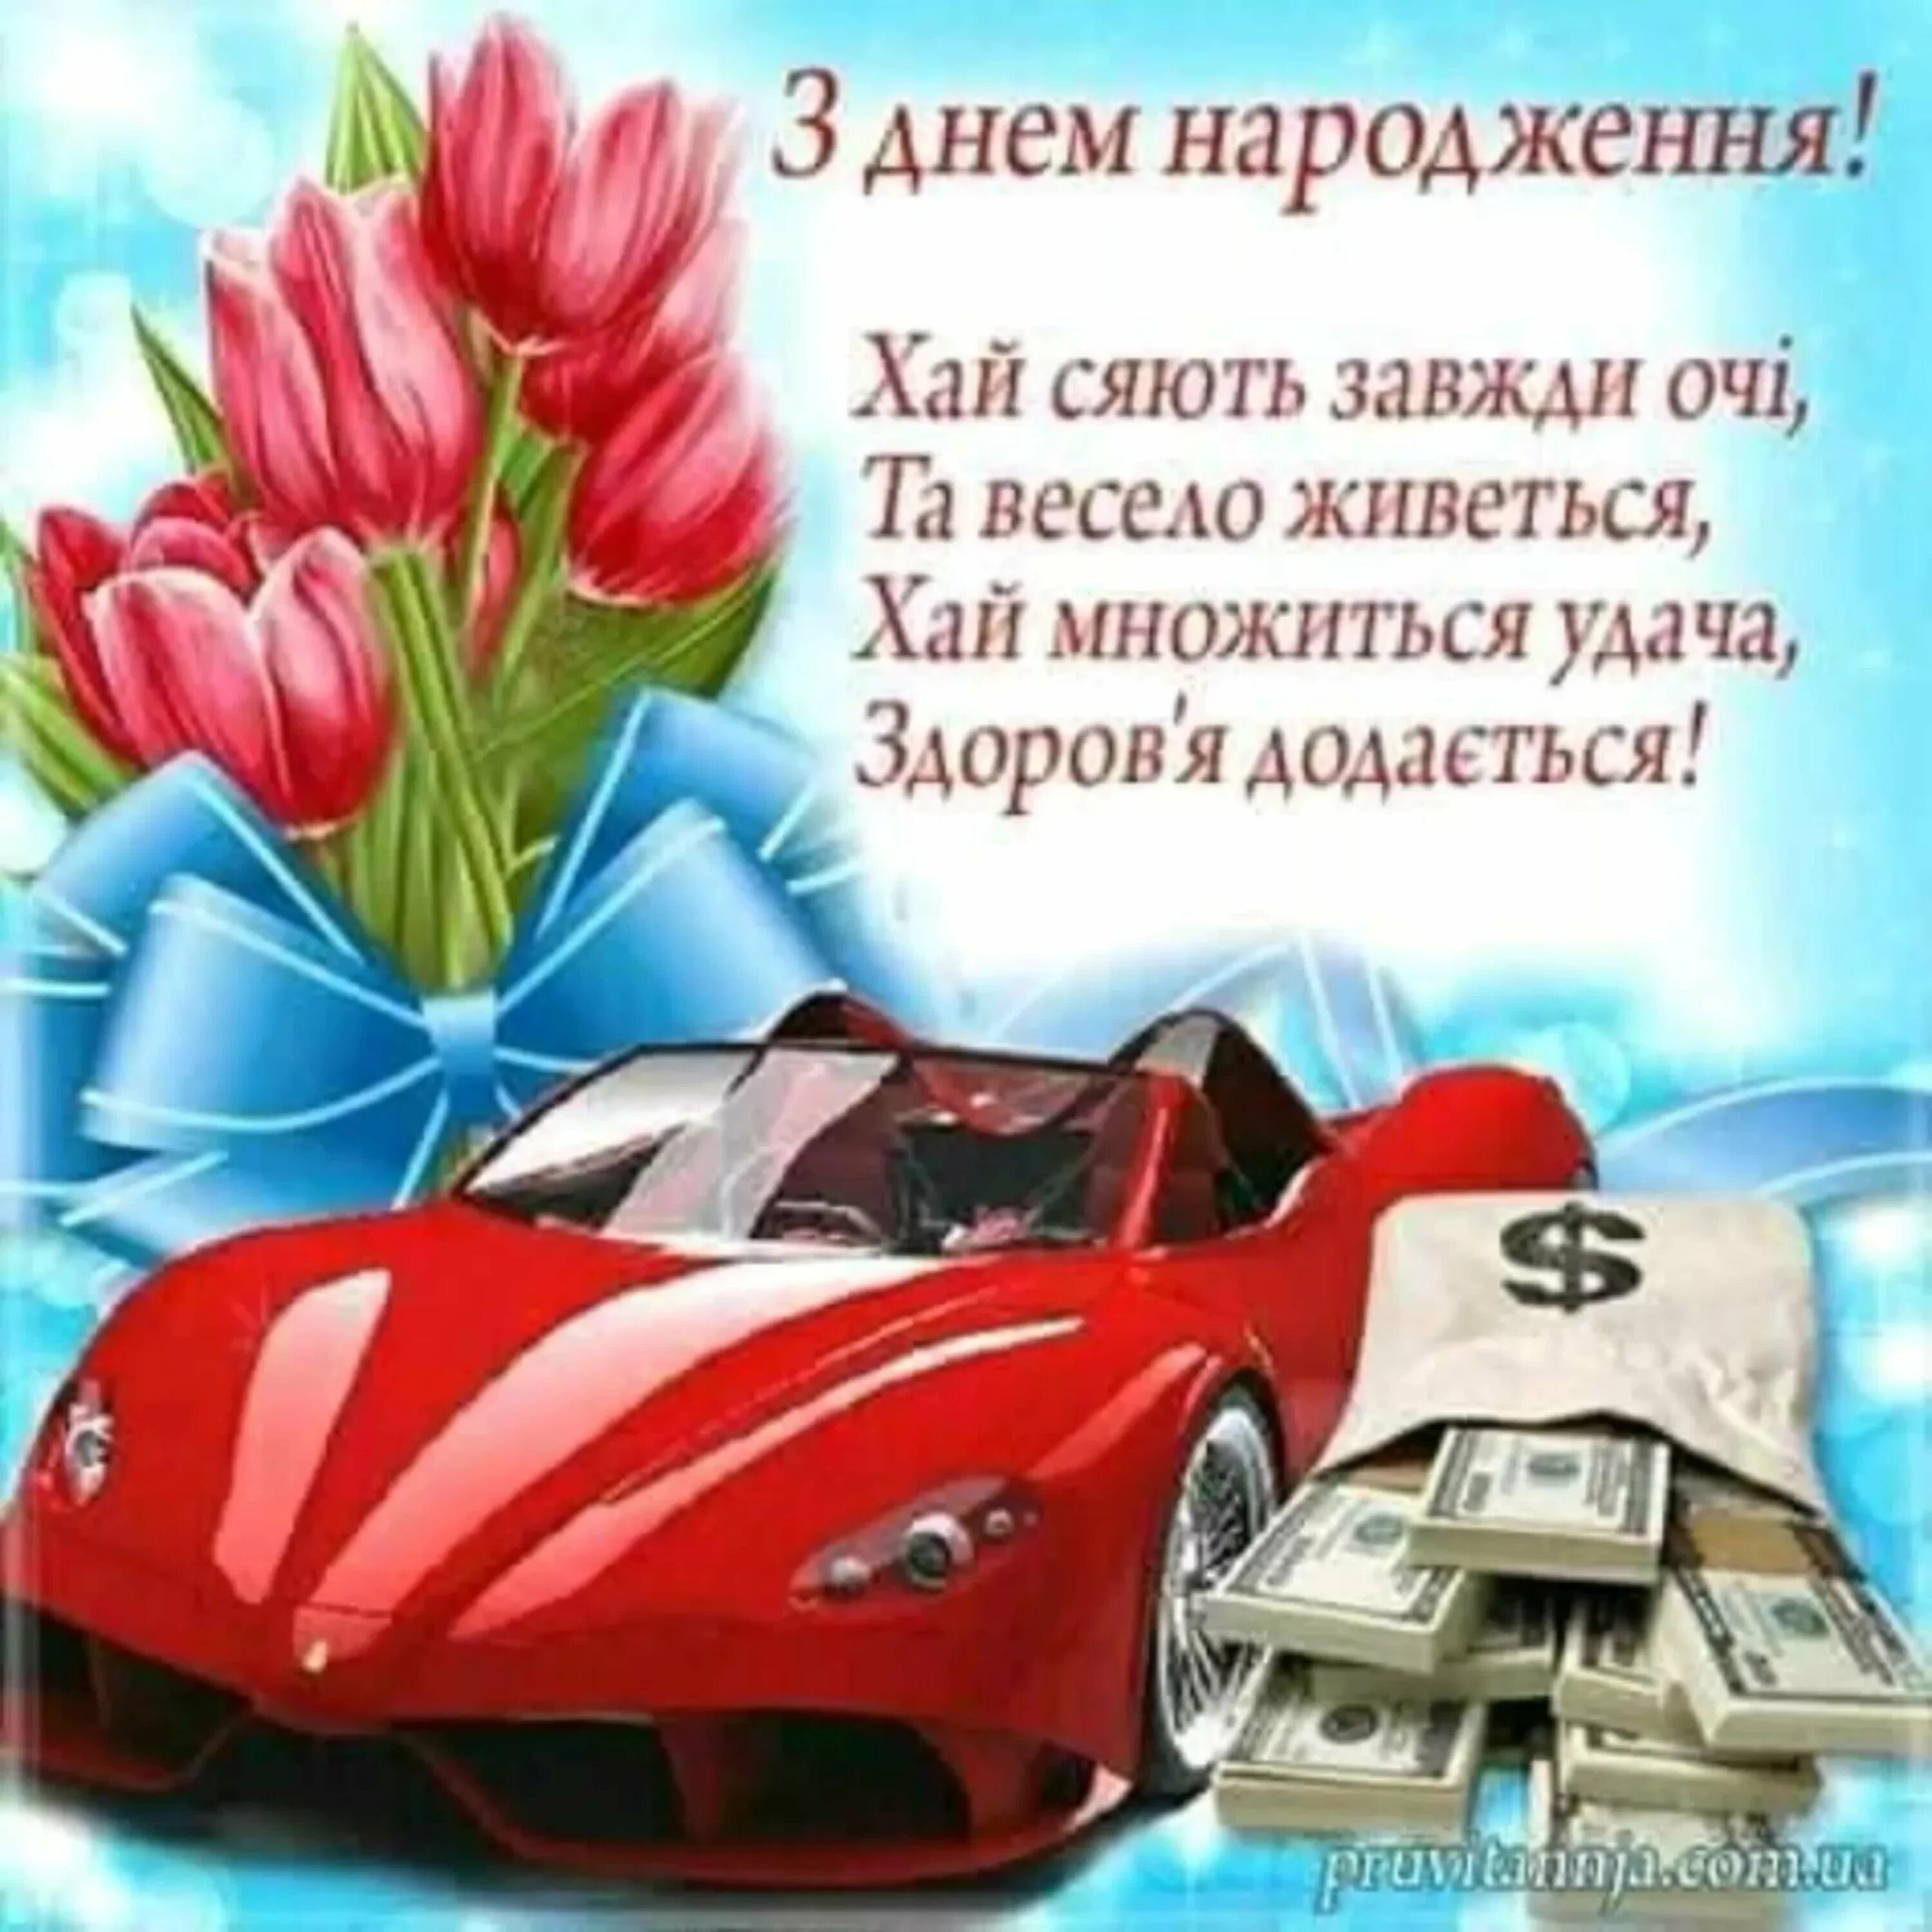 З днем народження. Поздравление с днем рождения на украинском. Поздравление на украинском для мужчины. Поздравления с днём рождения на украинском мужчине.